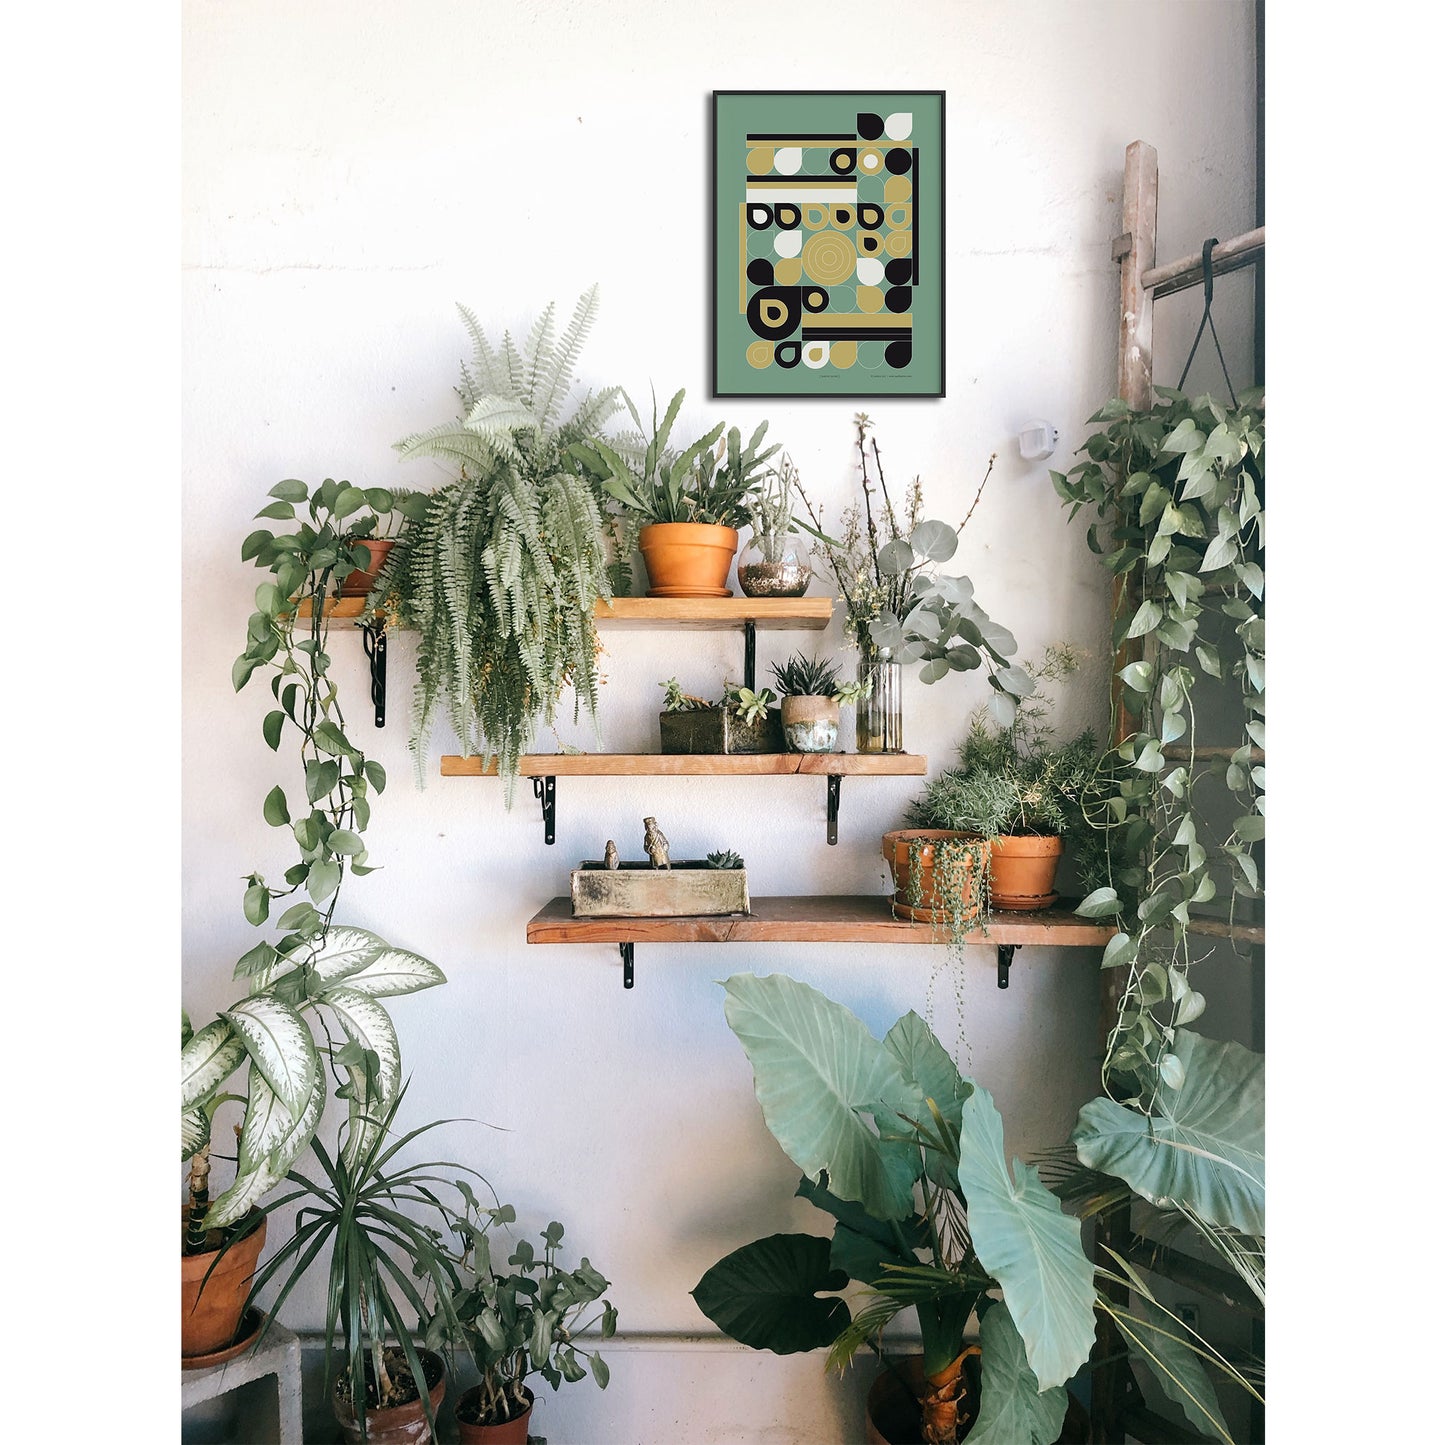 Productafbeelding, poster "jardin jaune", foto impressie 1, ingelijst hangend in een interieur met veel planten aan een wand 